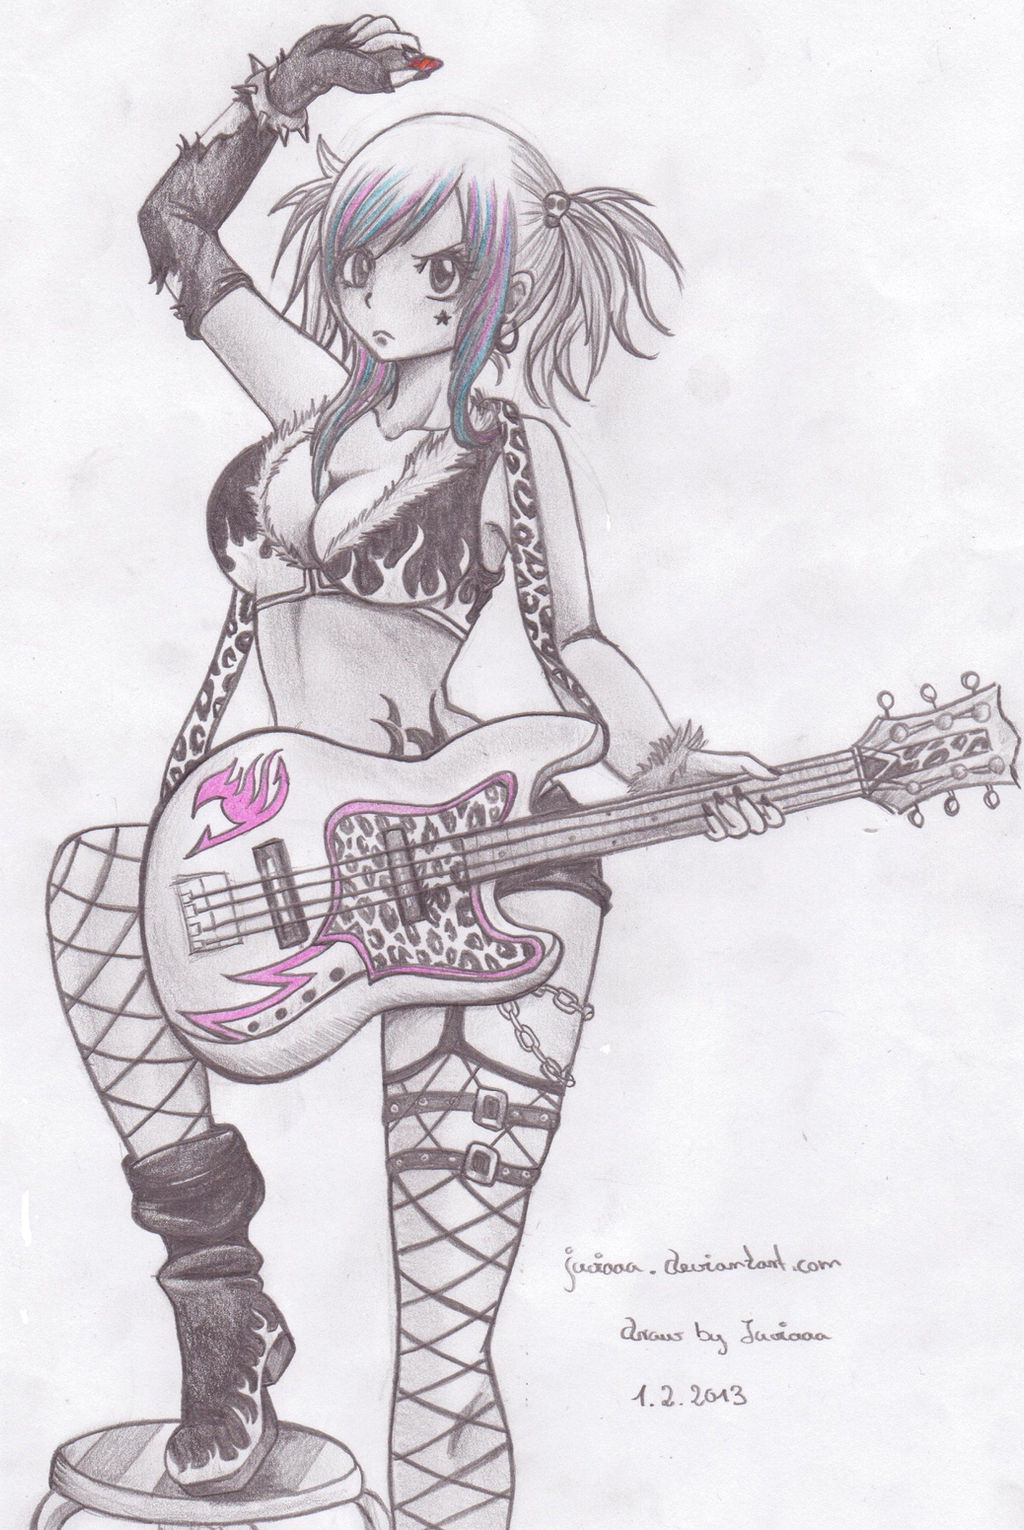 Rocker girl Lucy